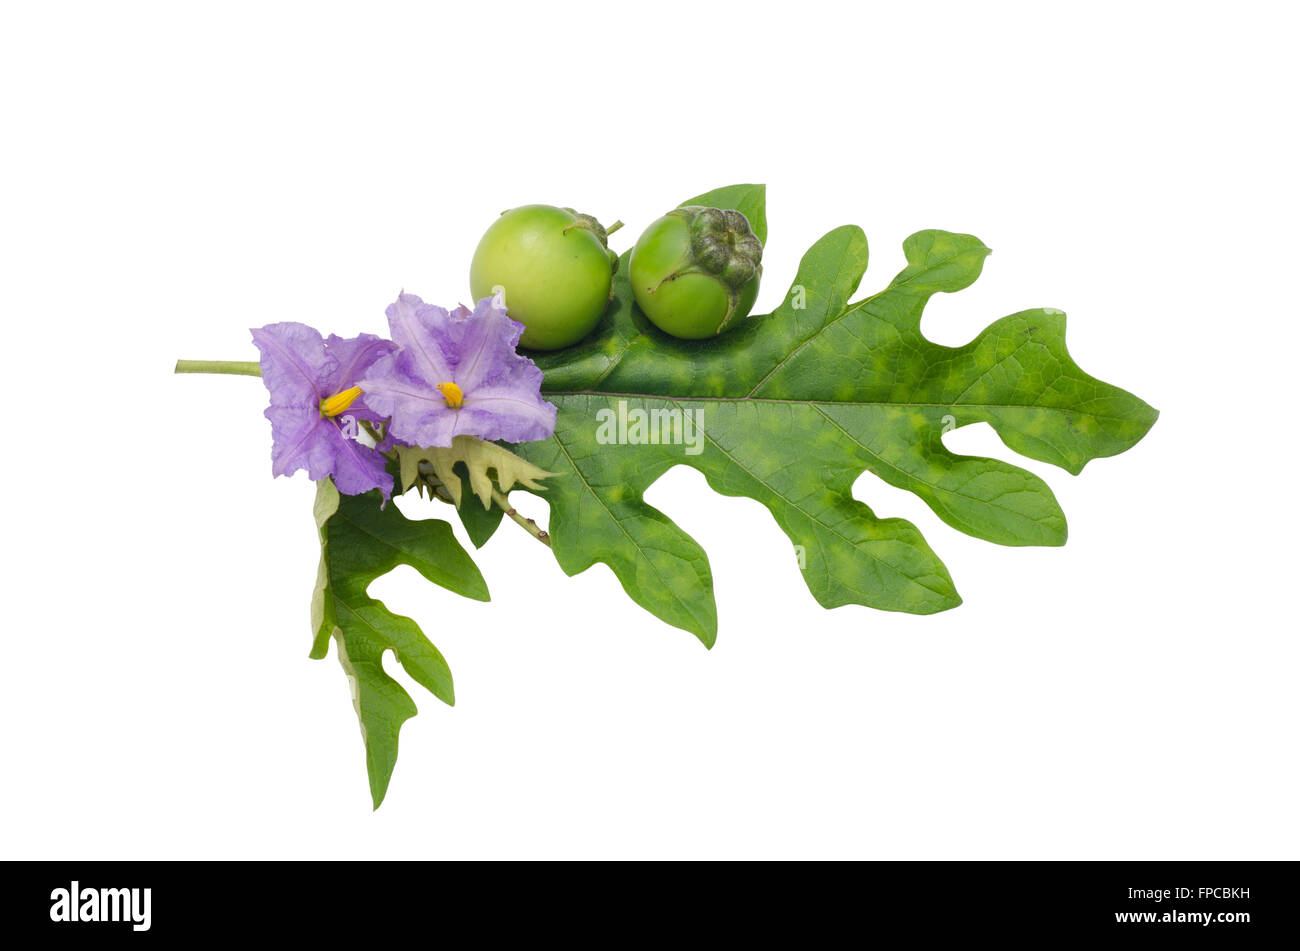 Solanum wrightii Benth isolated on white background Stock Photo